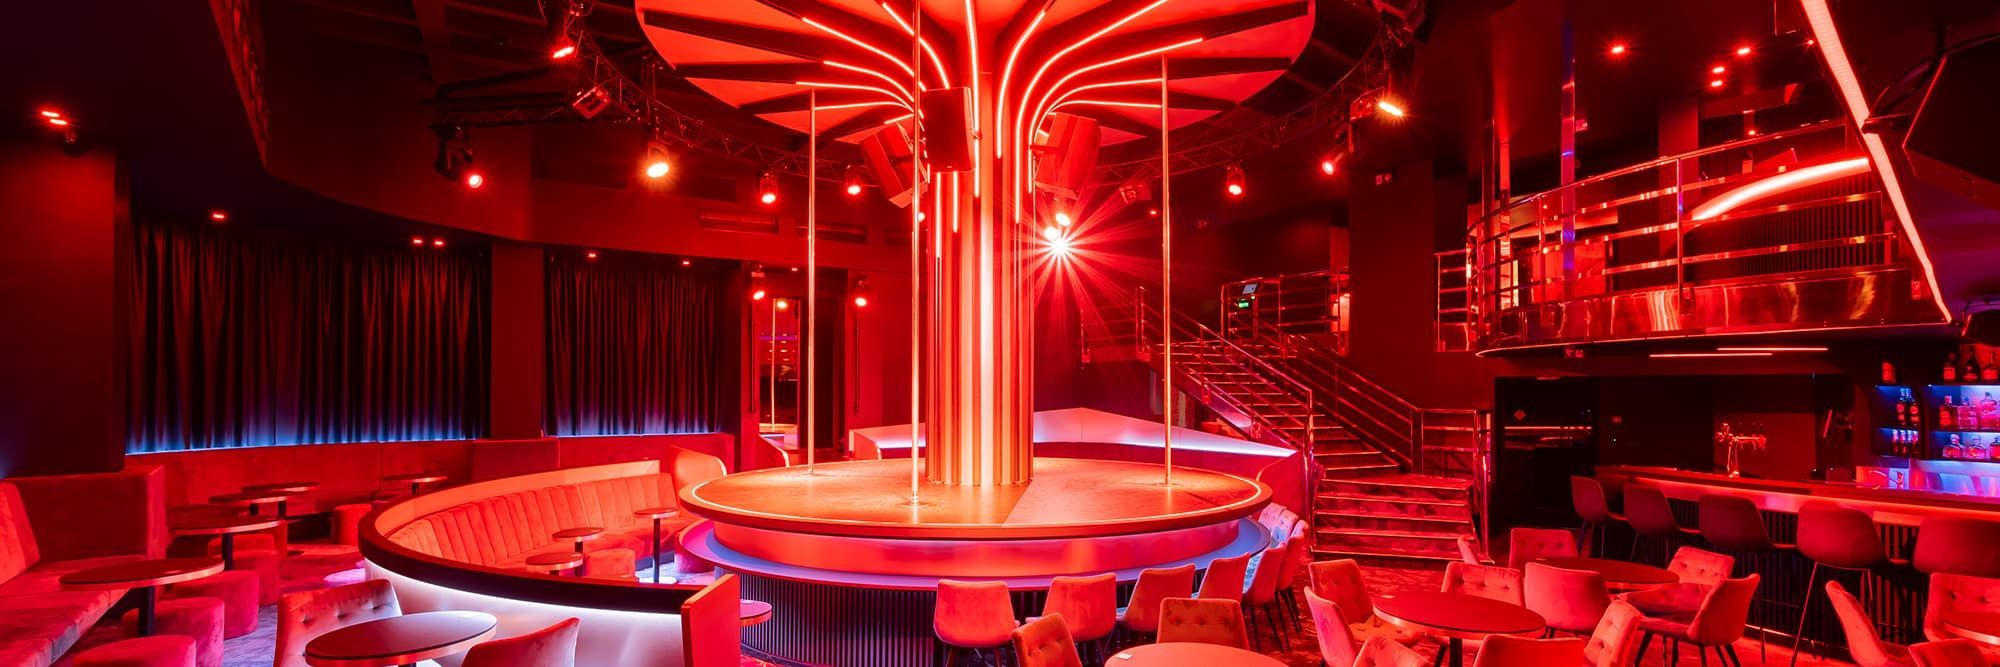 The best strip club in Prague Interior